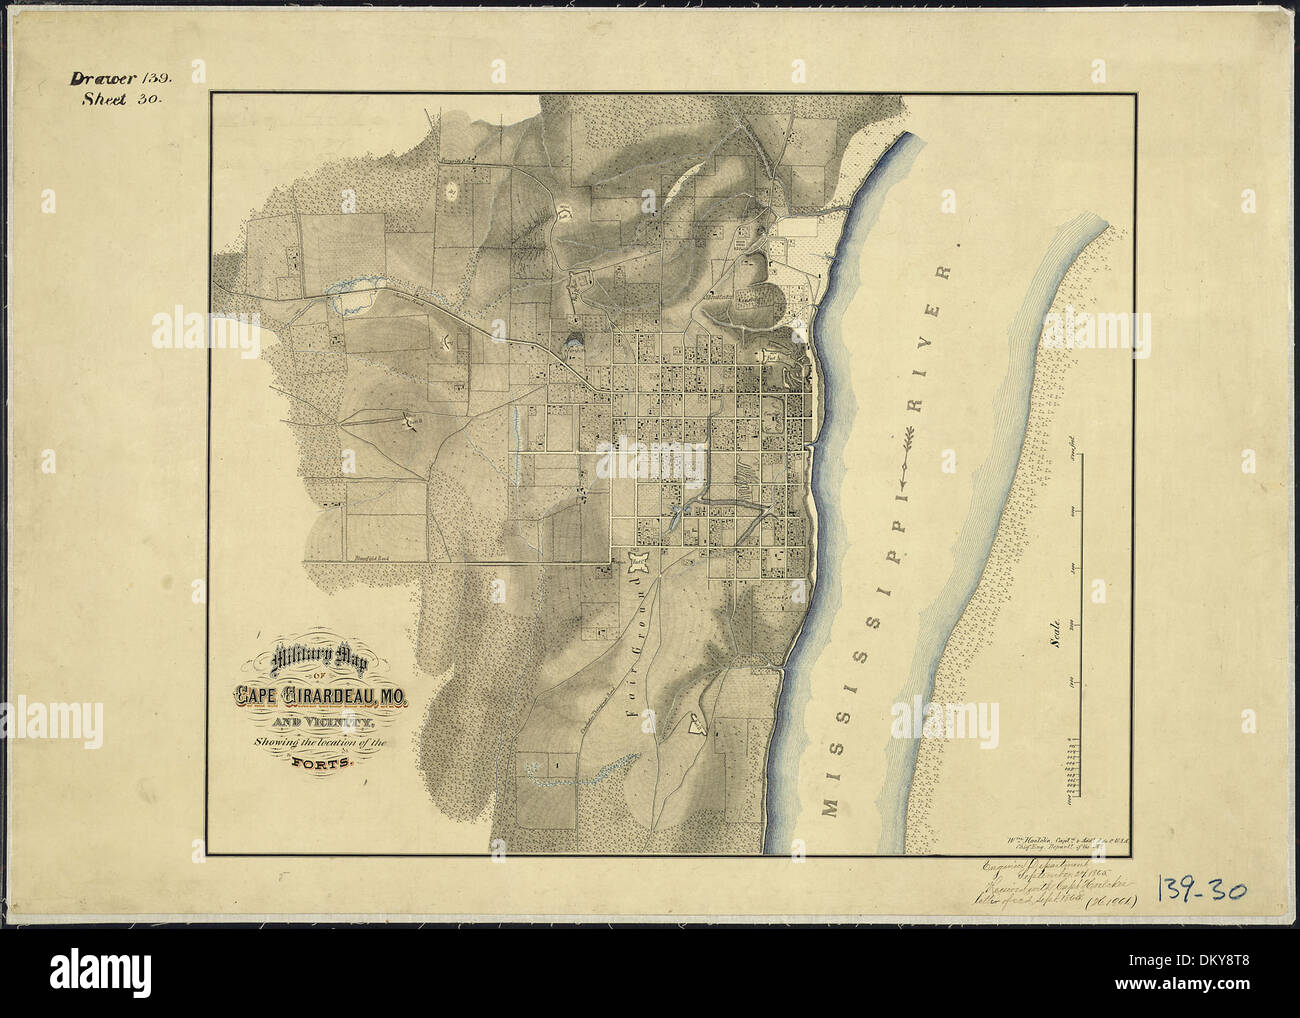 Militärische Karte Cape Girardeau, Mo, und Umgebung, zeigt den Standort des Forts. WM. Hoelcke, Captn. & Addl... 305778 Stockfoto